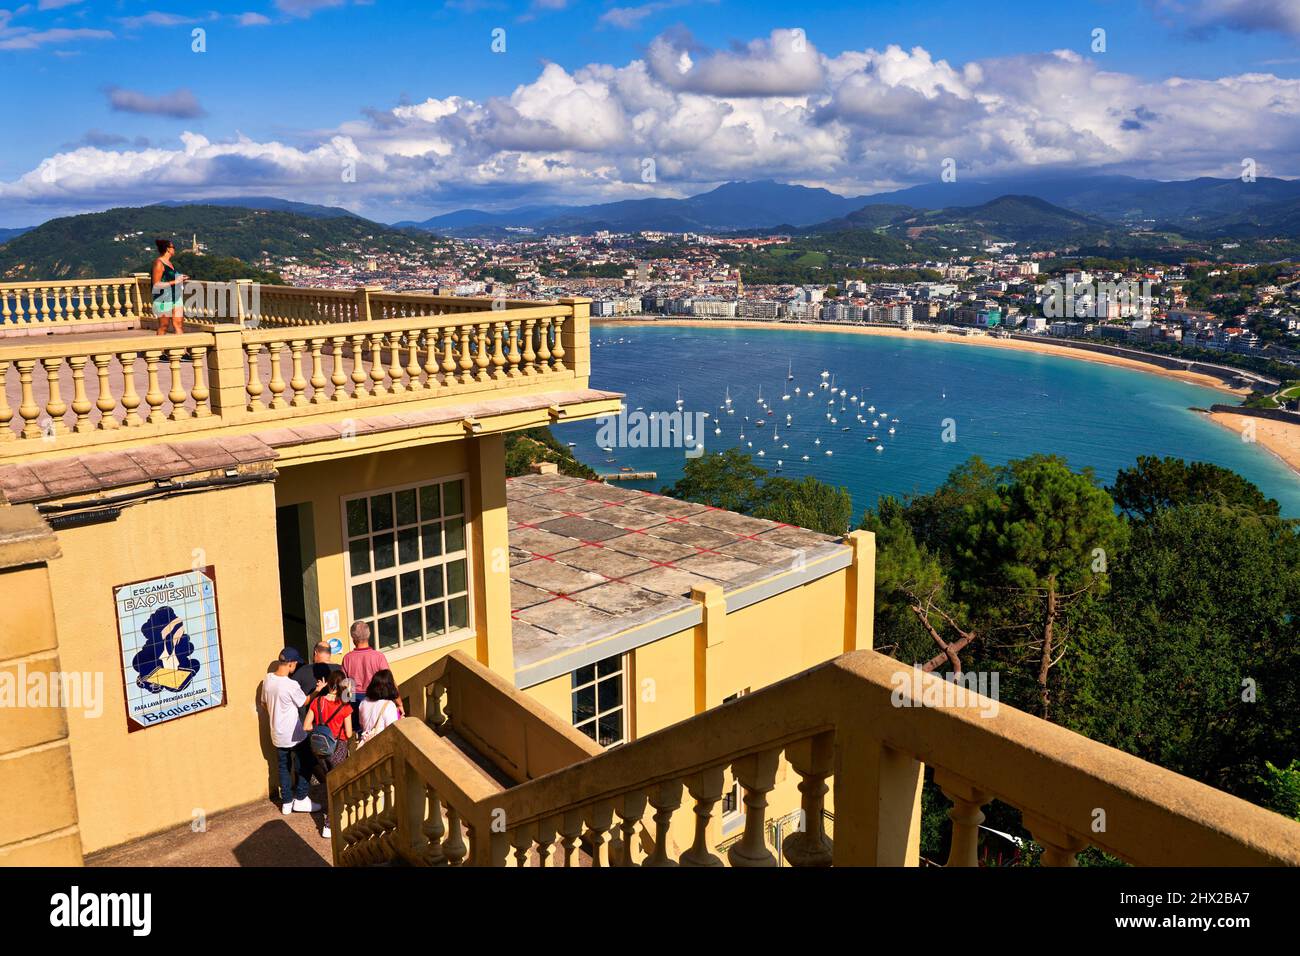 Blick auf die Bucht von La Concha von der Standseilbahn, die von der Stadt nach Monte Igeldo, Donostia, San Sebastian, kosmopolitische Stadt von 187.000, hinauffährt Stockfoto